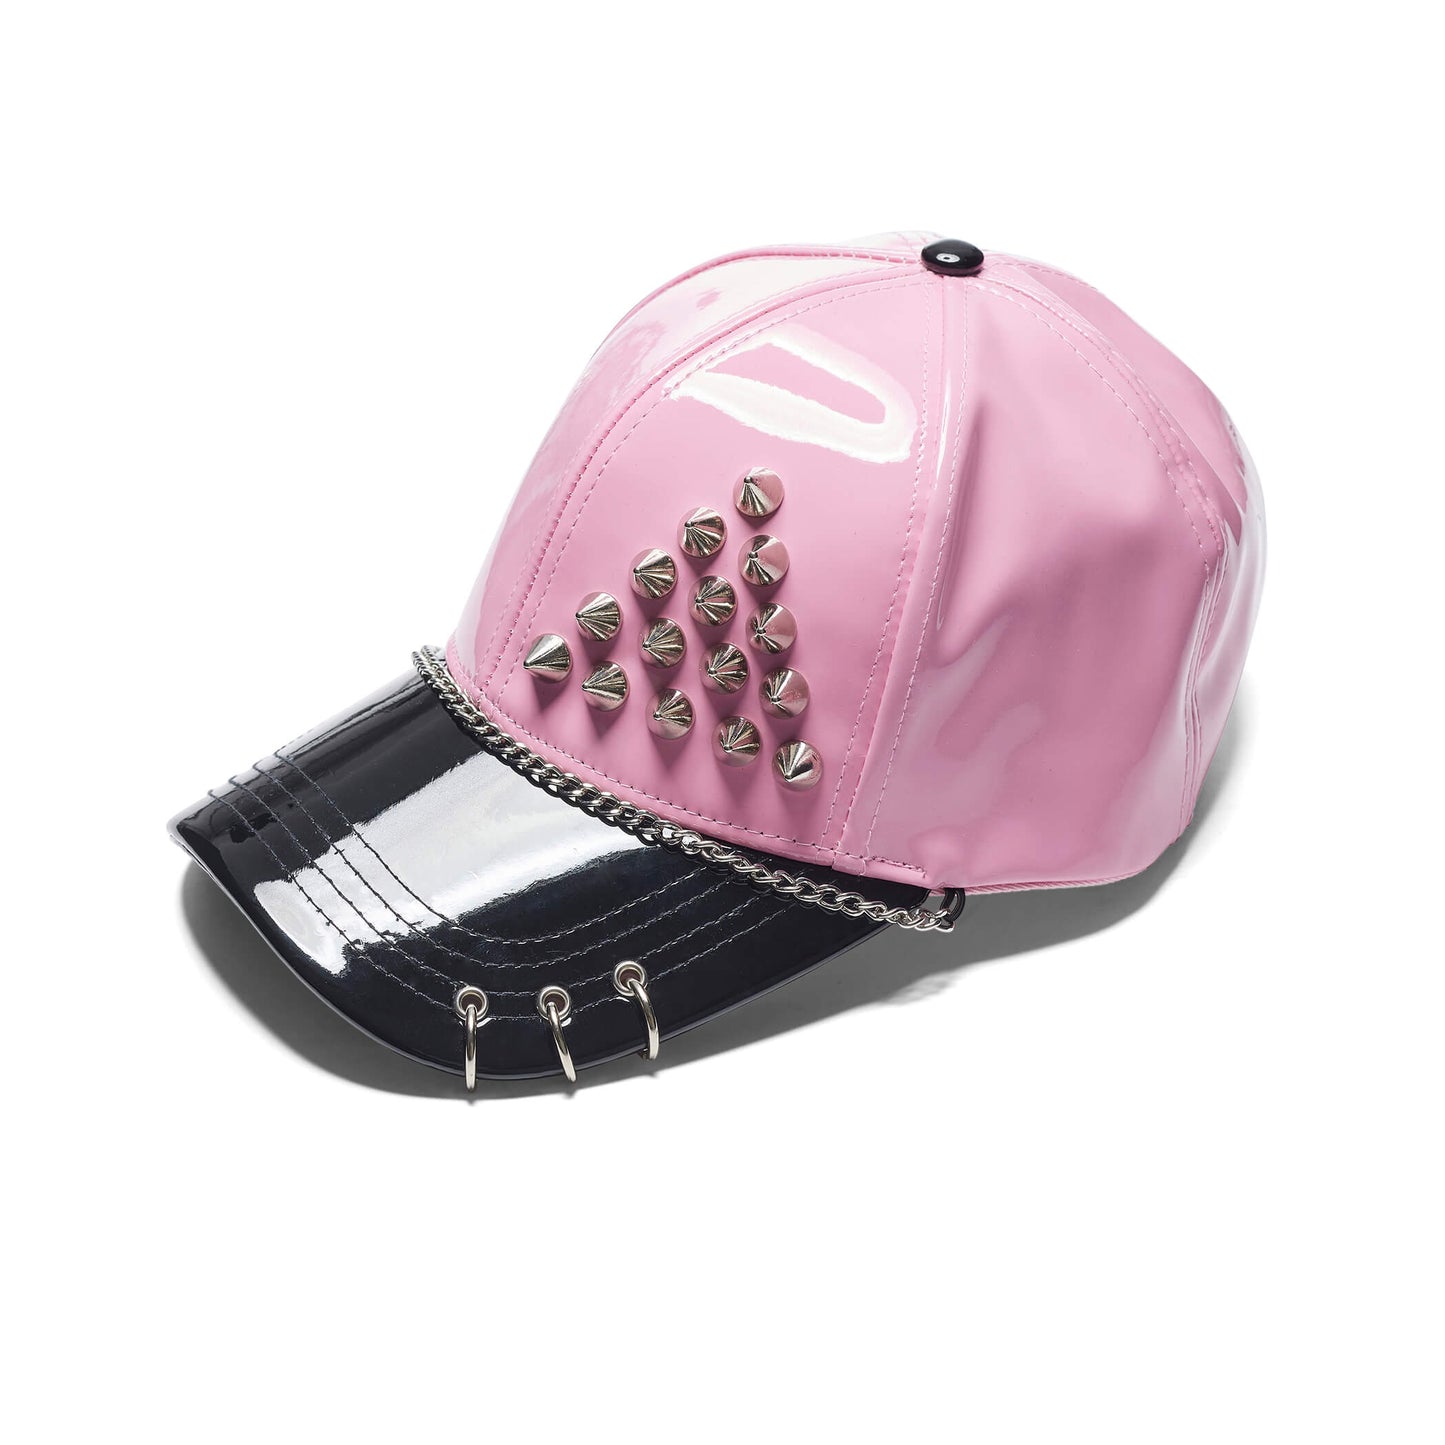 Malevolent Grunge Pink Cap - Accessories - KOI Footwear - Pink - Three-Quarter View